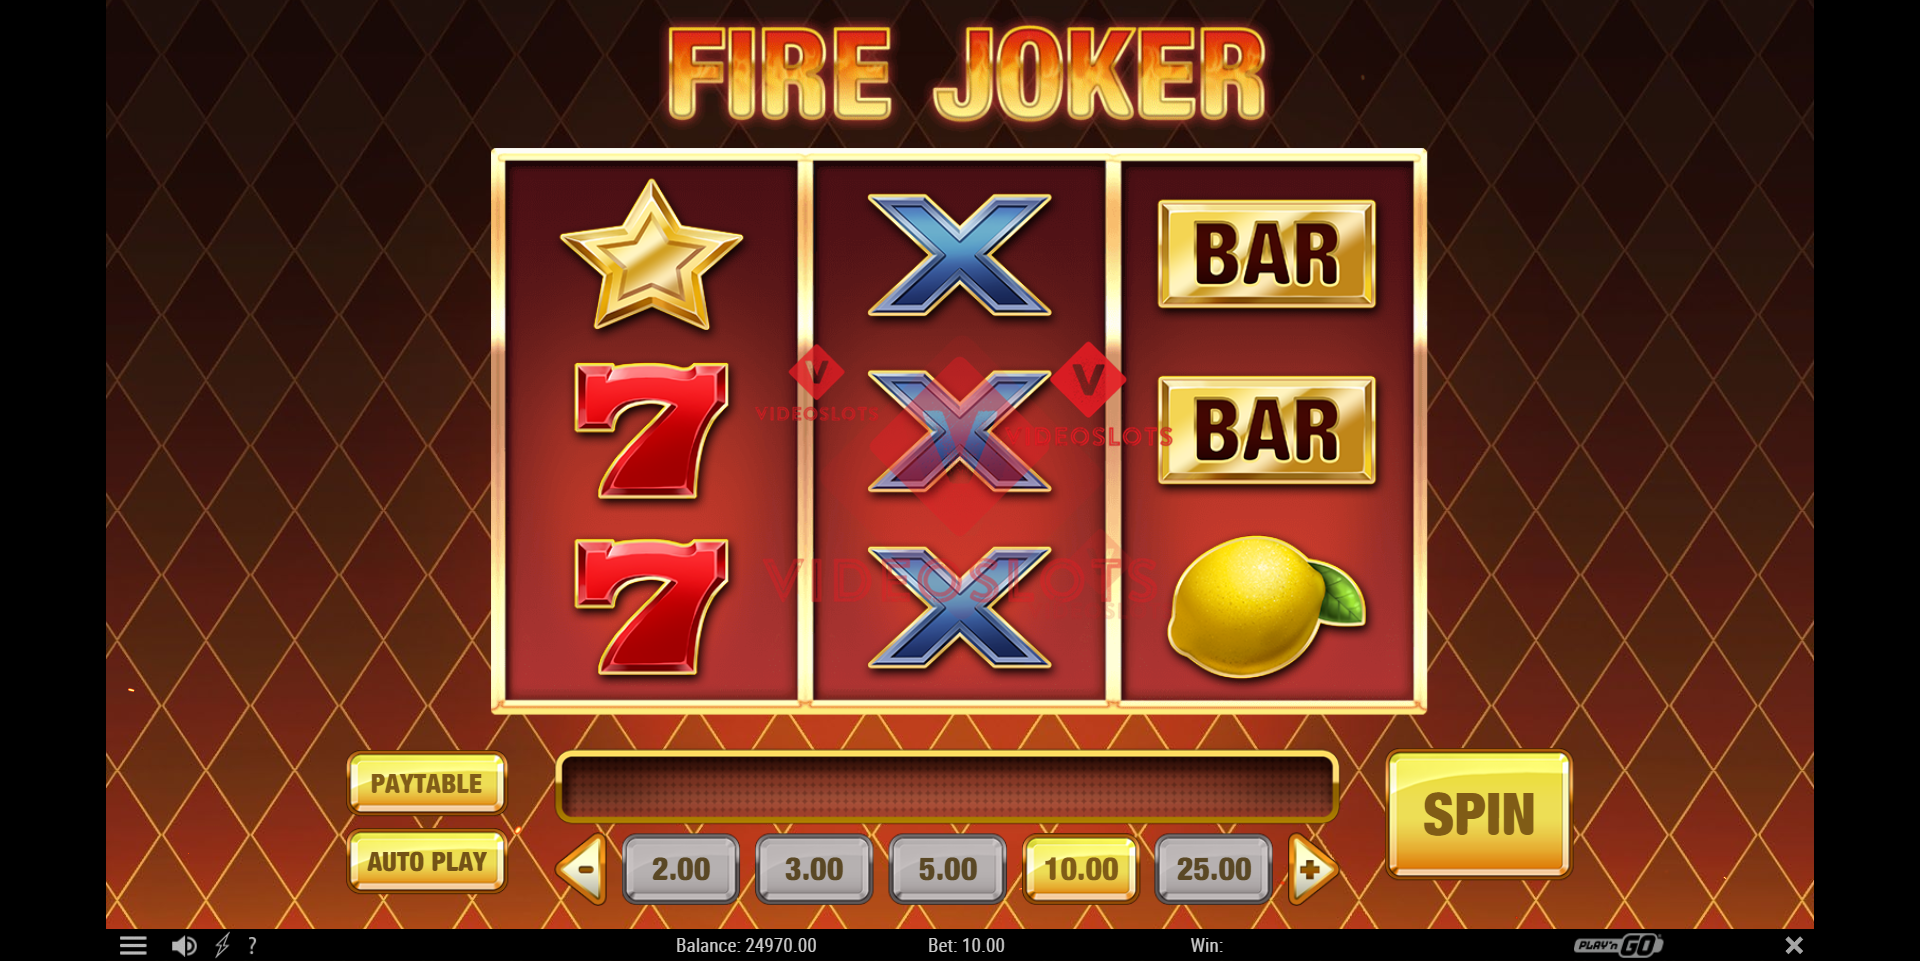 Base Game for Fire Joker slot from Play'n Go